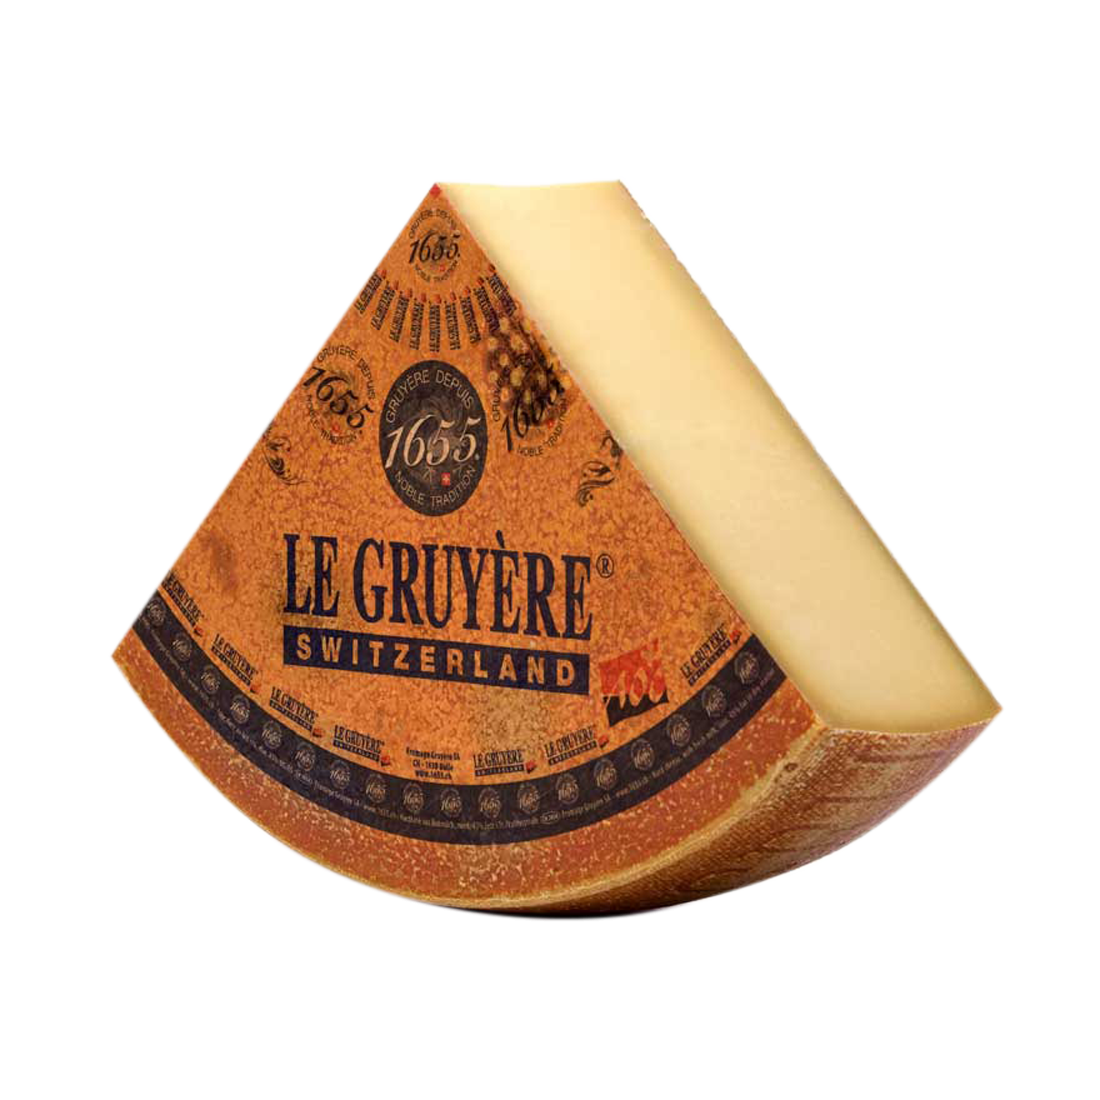 Швейцарский сыр le Gruyere. Сыр Грюйер Швейцария. Сыр Грюйер резервный. Швейцарский сыр в упаковке.